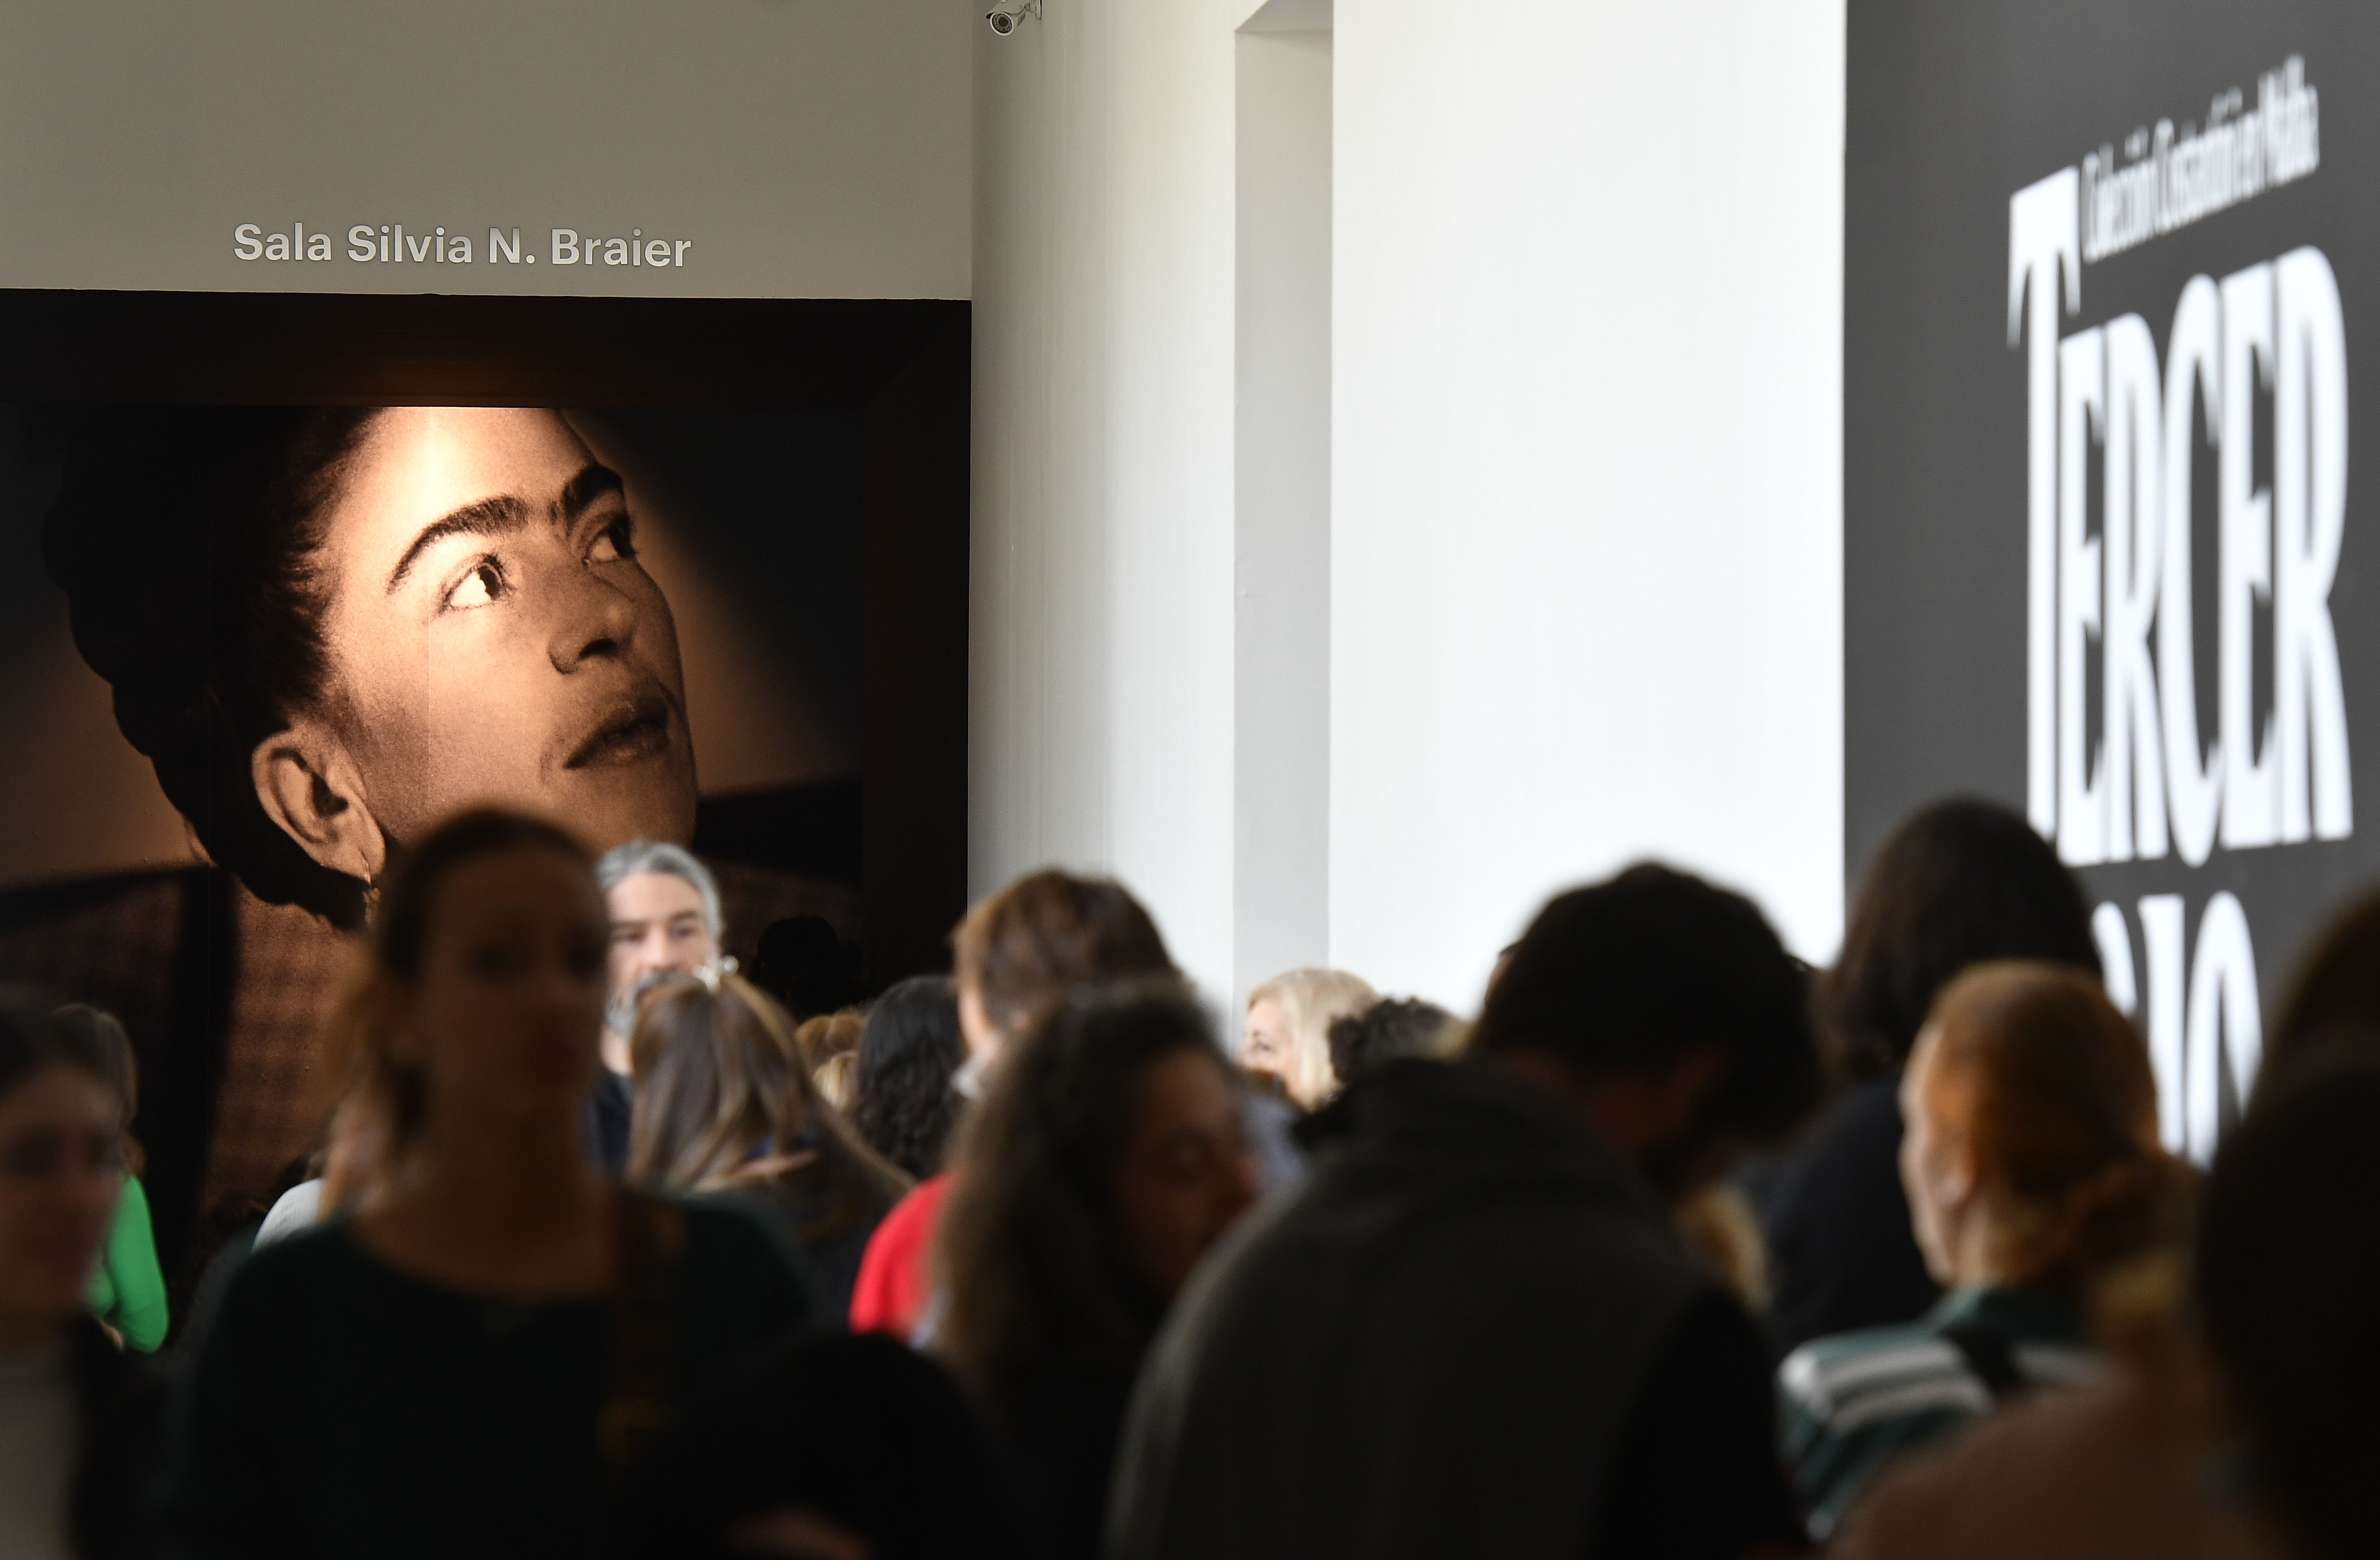 La muestra, con más de 200 obras de arte latinoamericano, presenta "Diego y yo", de Kahlo 